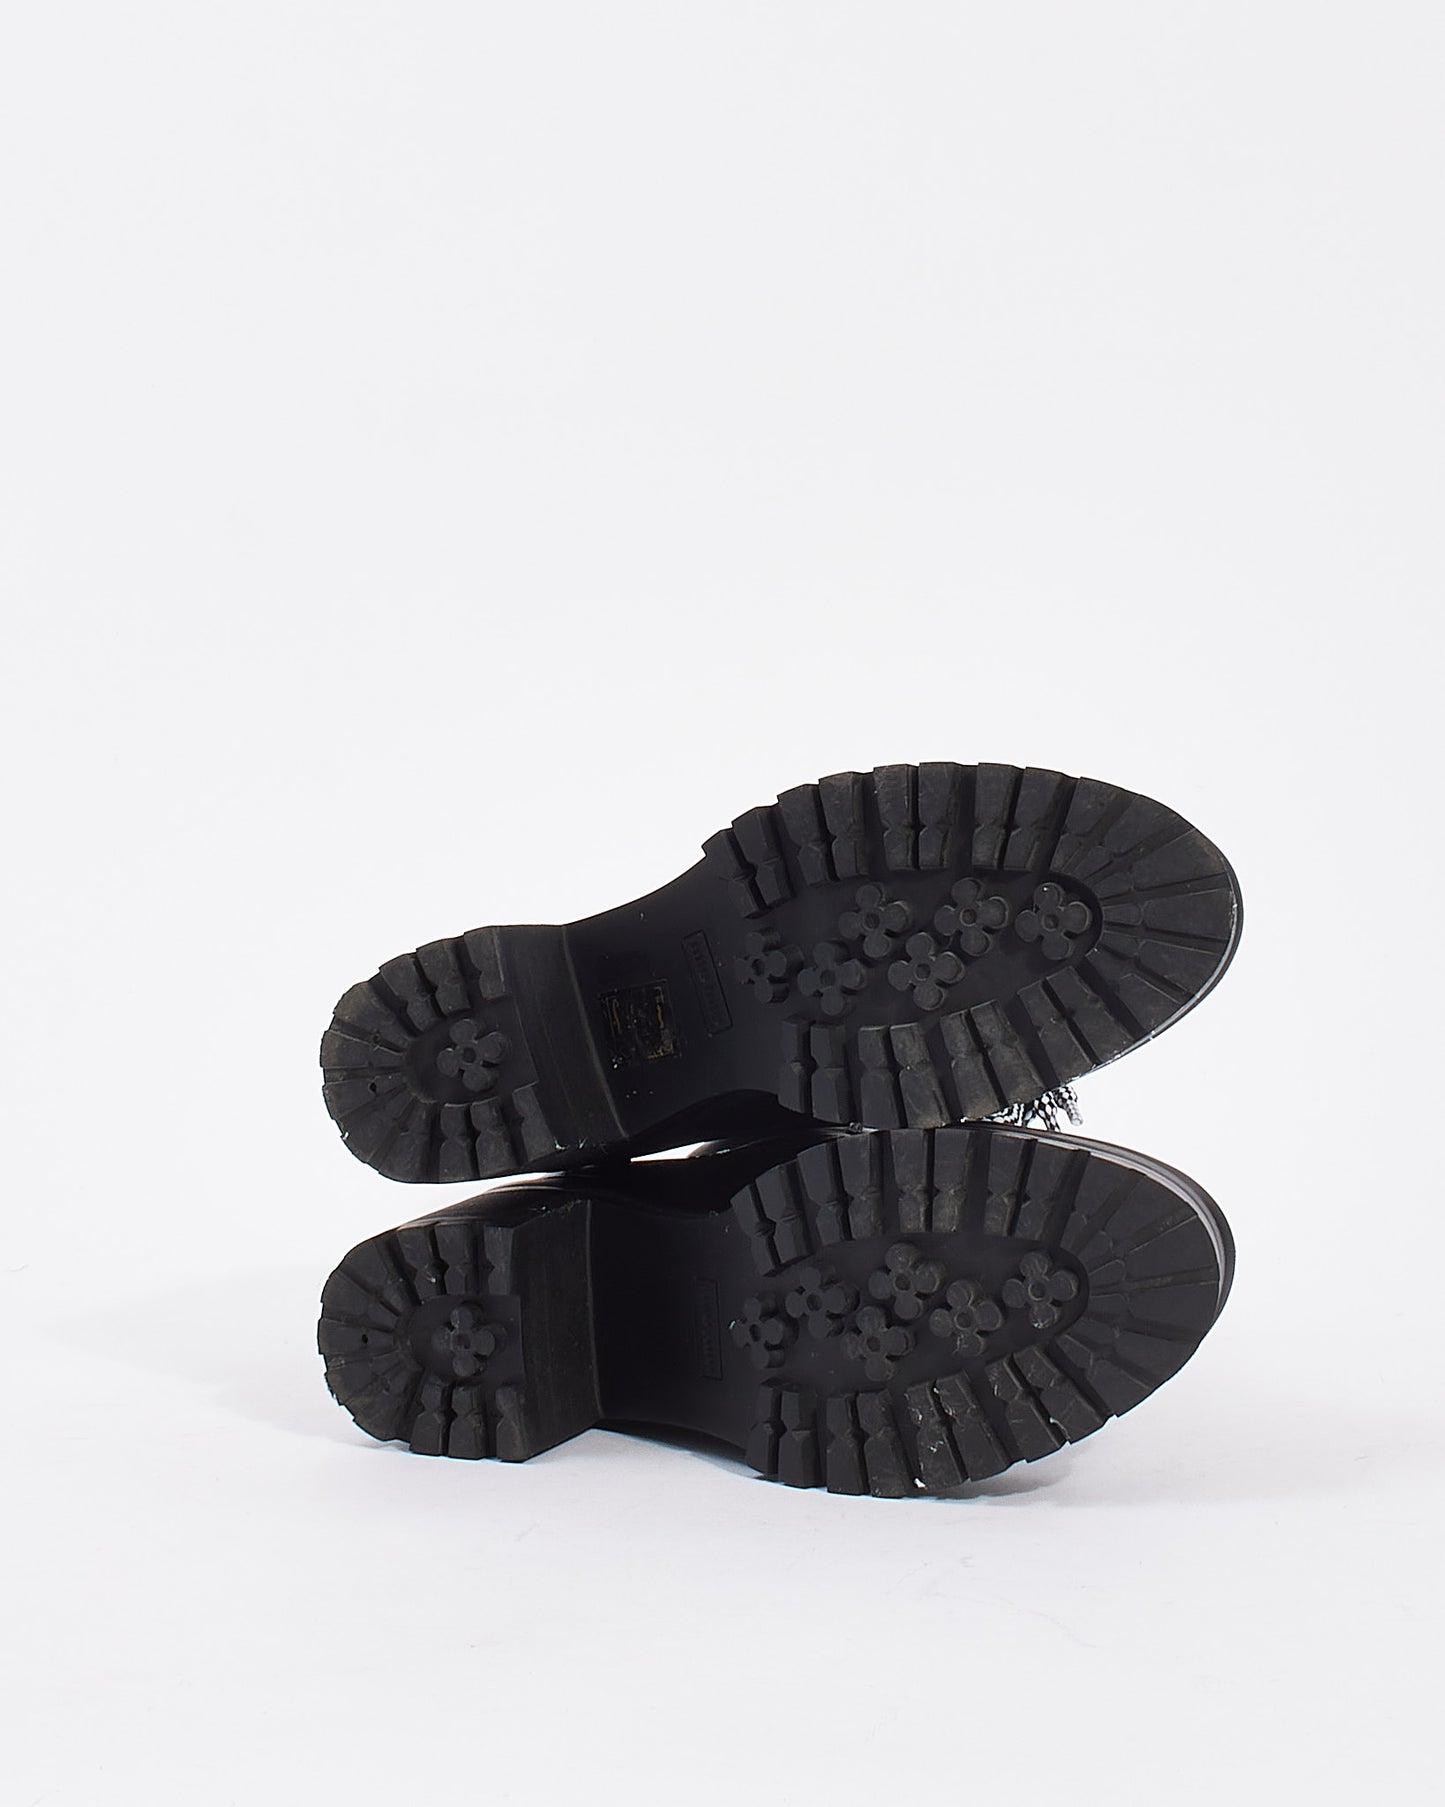 Miu Miu Black Leather Lace Up Heeled Booties - 36.5